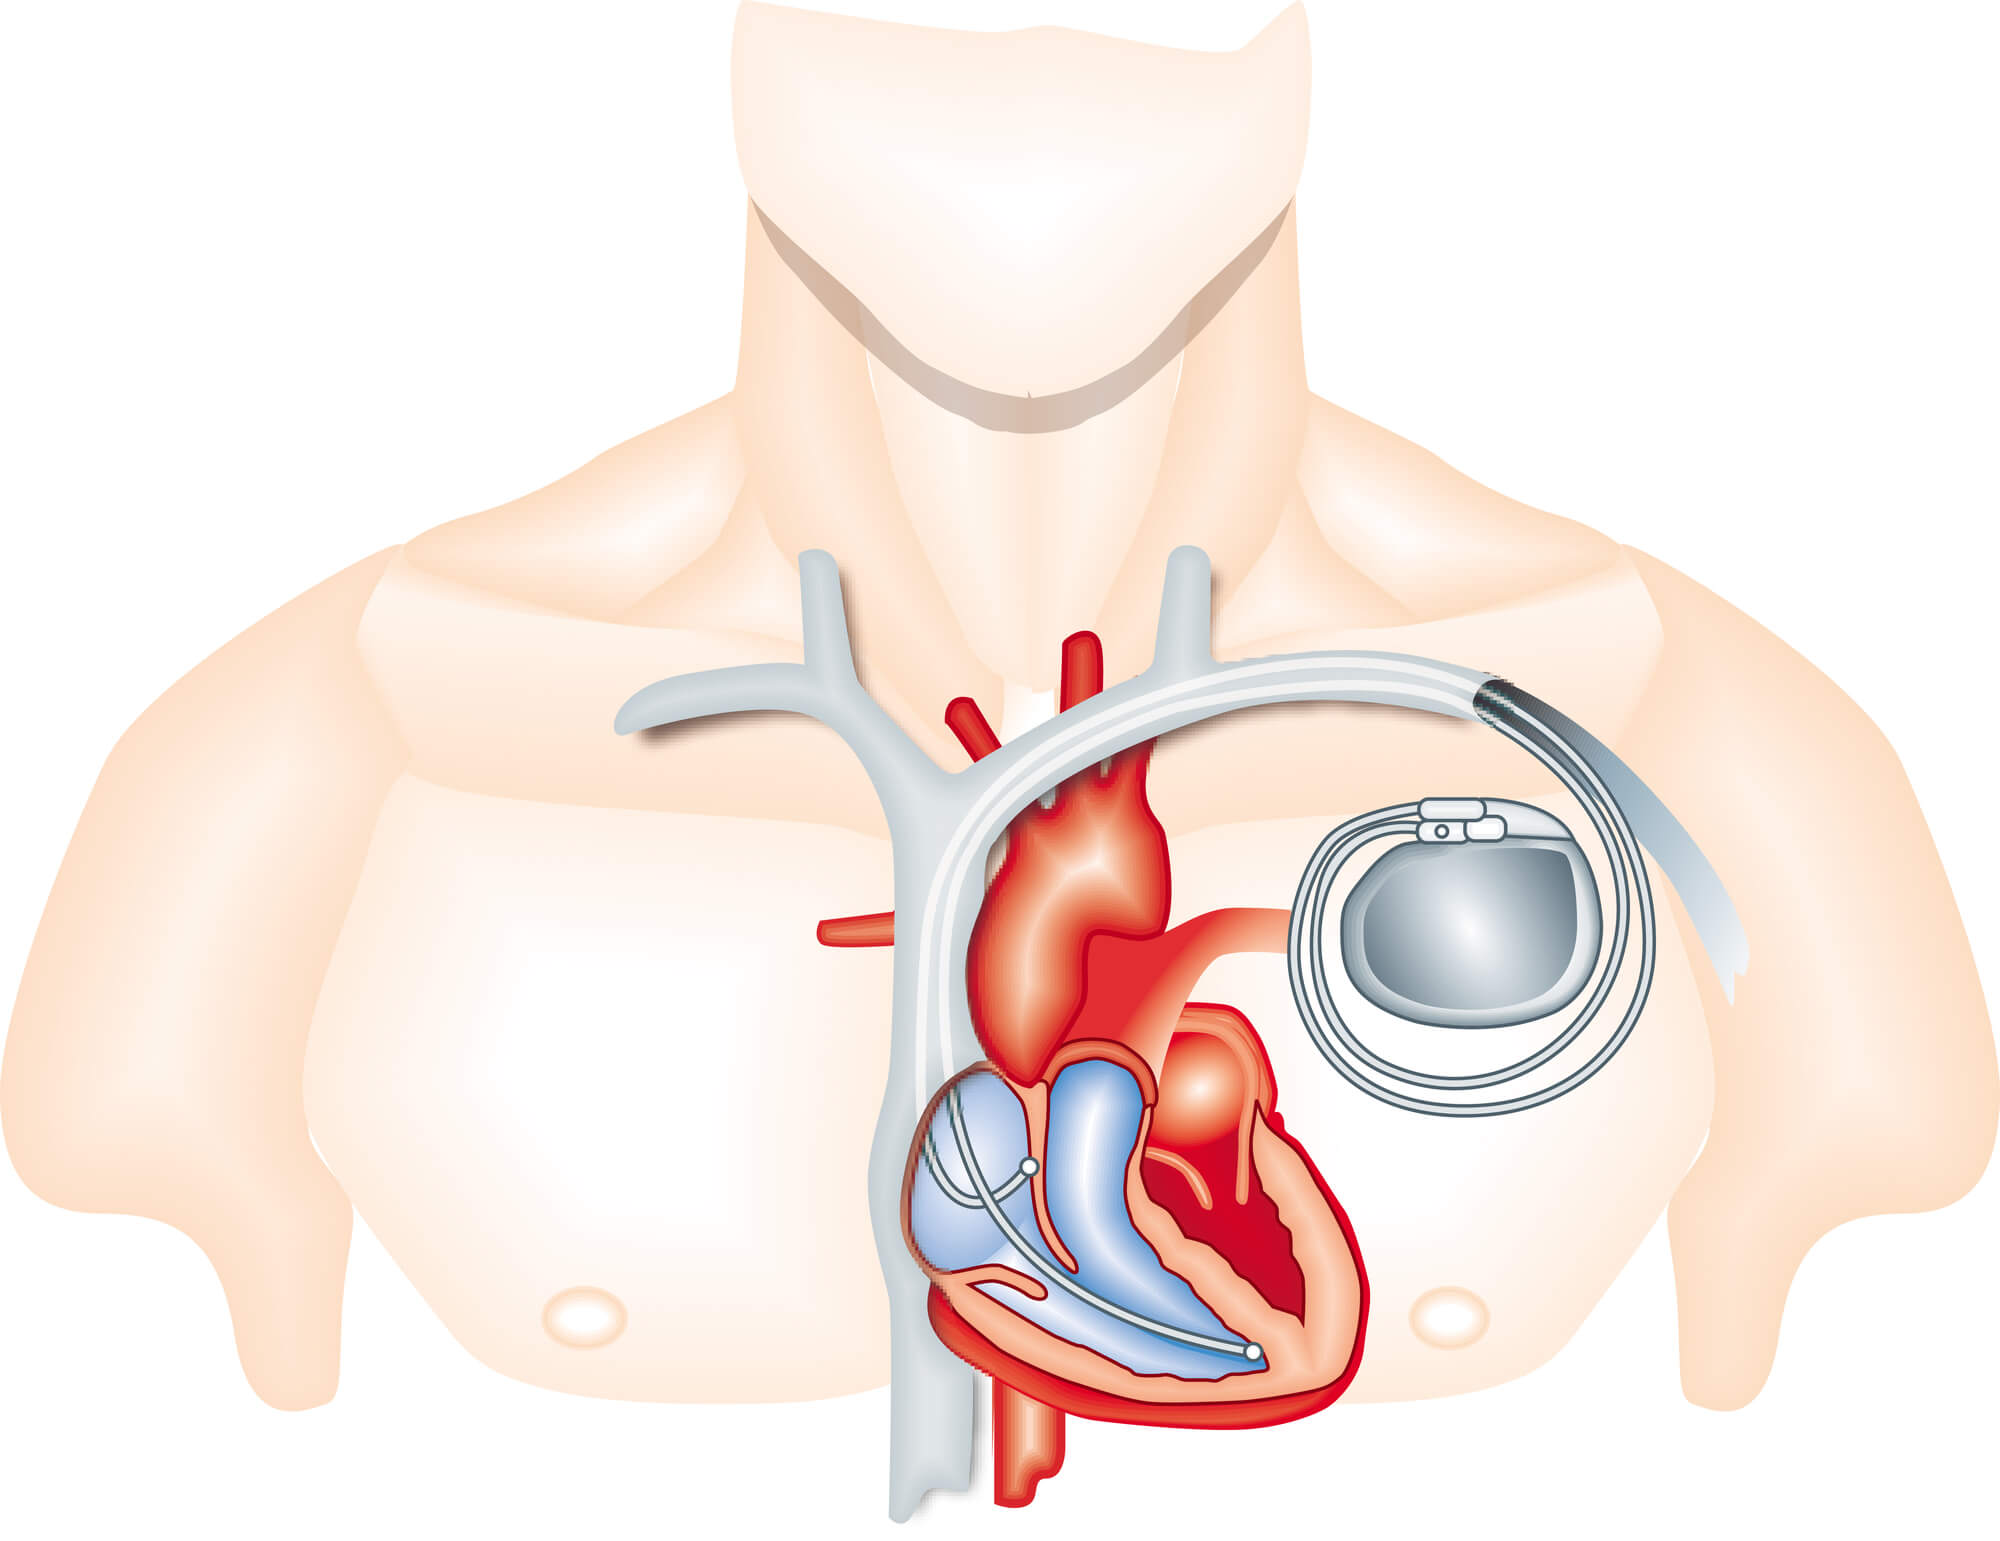 При наличии кардиостимулятора можно. Кардиостимулятор Pacemaker. Операция кардиостимулятор сердца. Имплантация сердца кардиостимулятор. Электрокардиостимулятор имплантируемый однокамерный.